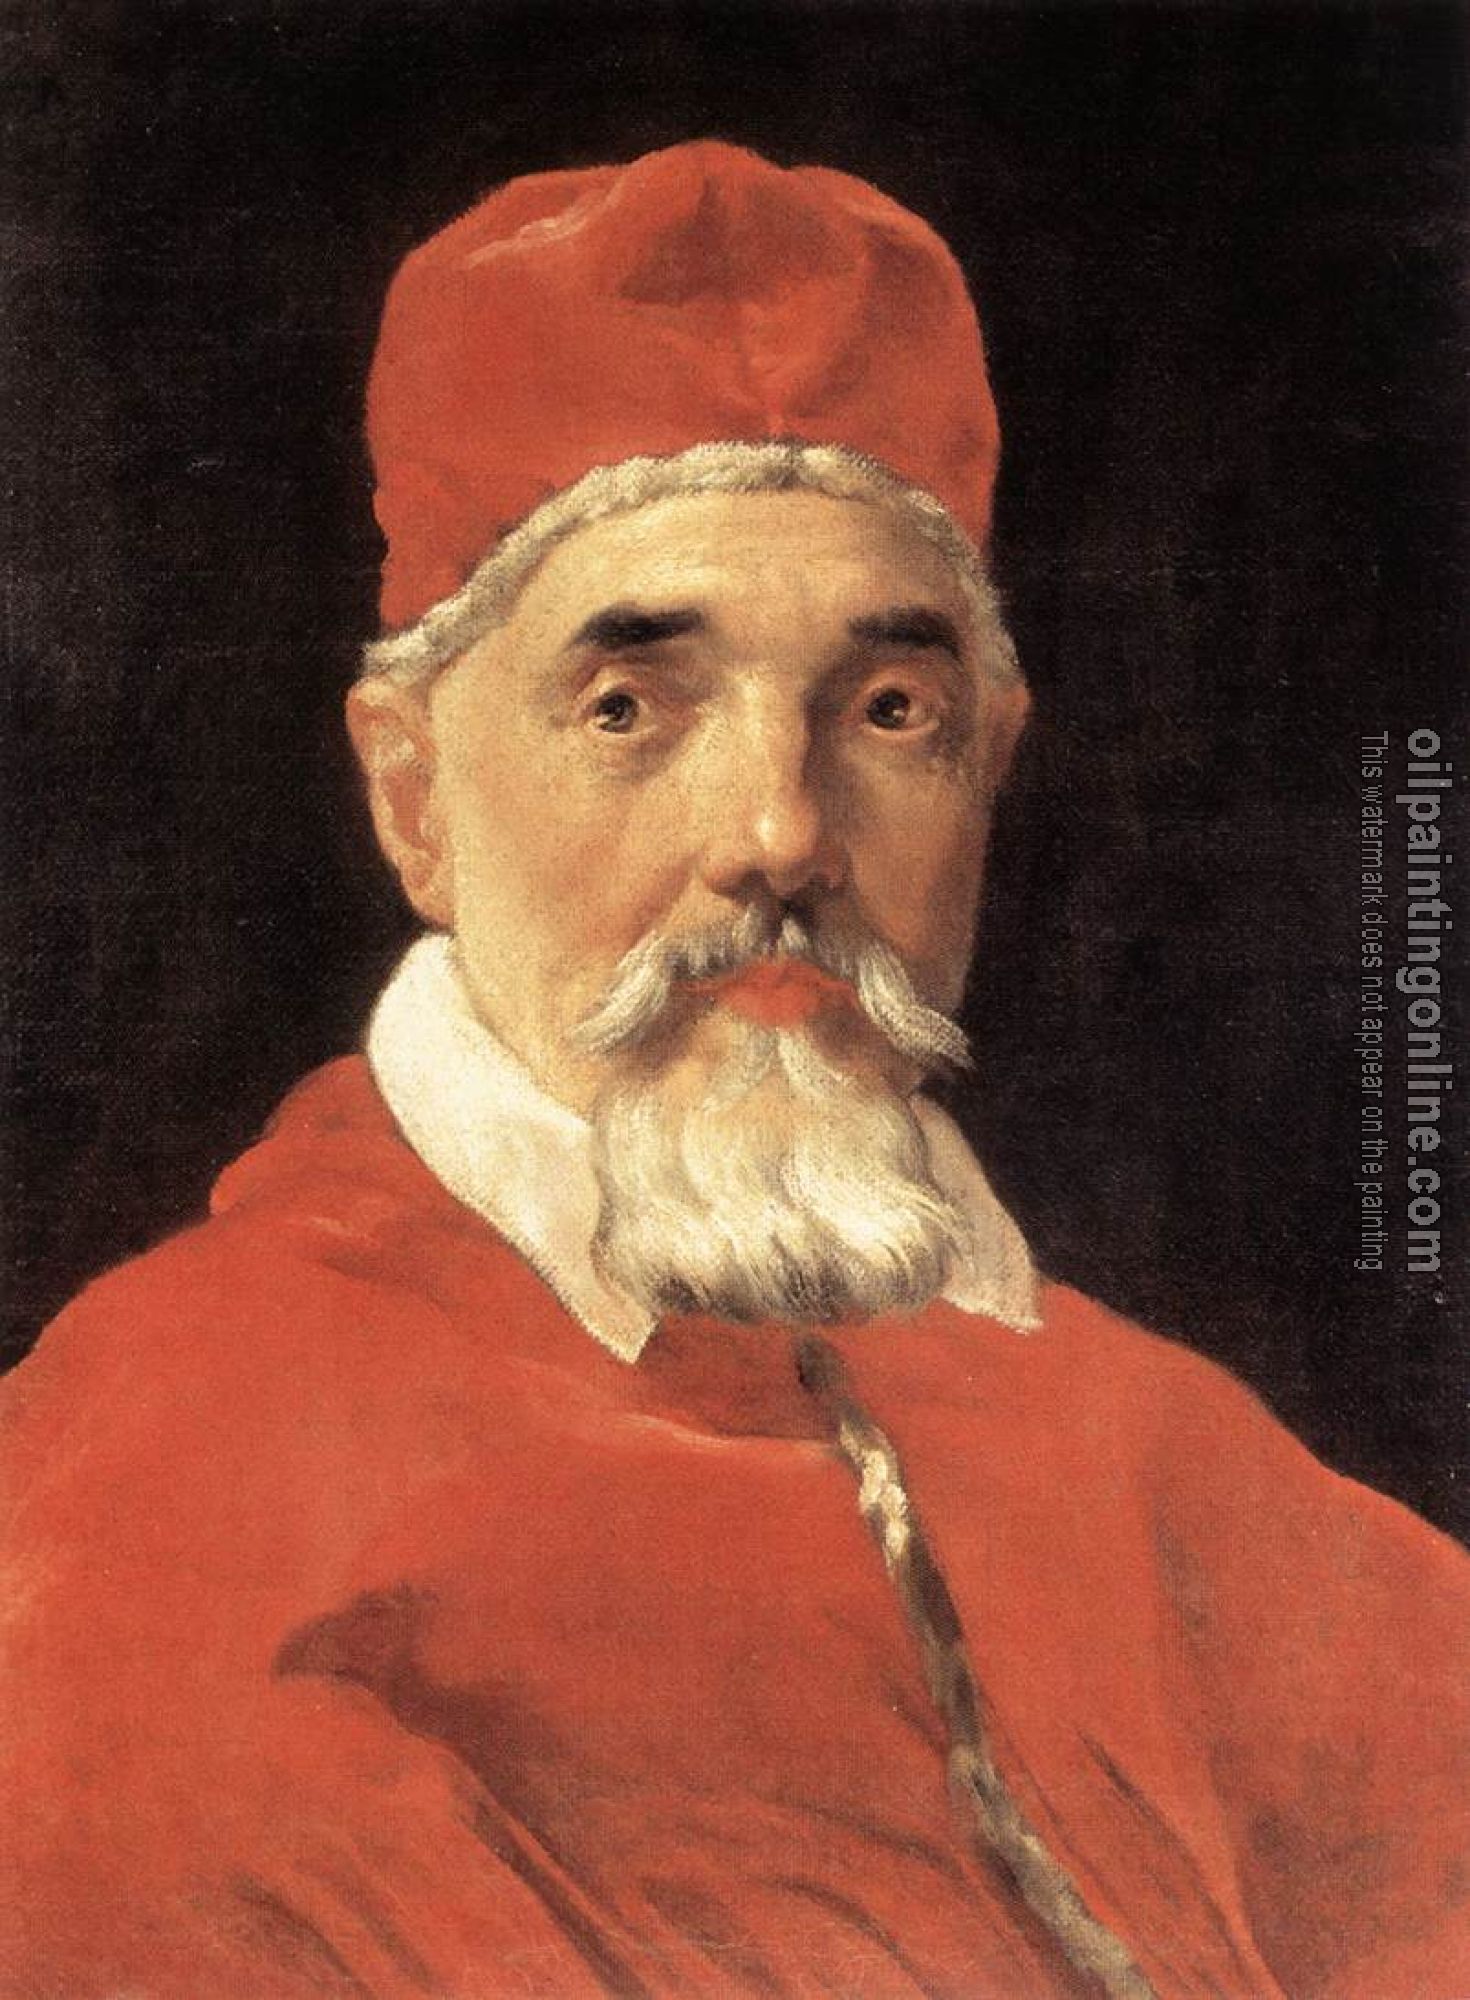 Bernini, Gian Lorenzo - Pope Urban VIII